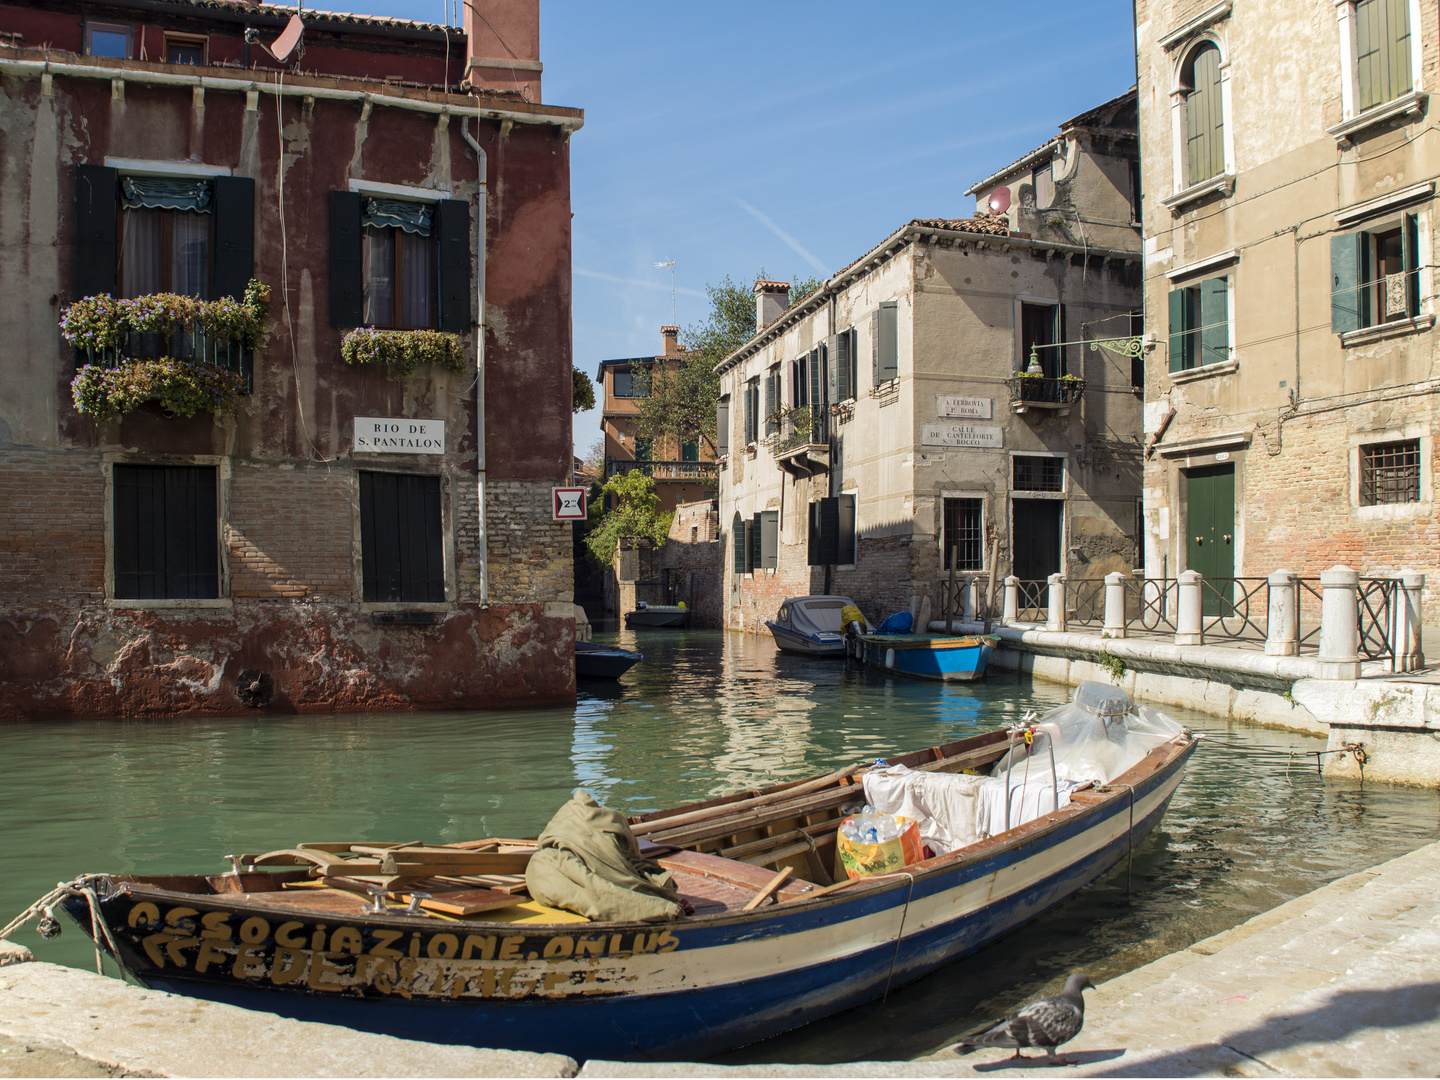 Einsames Eckchen in Venedig